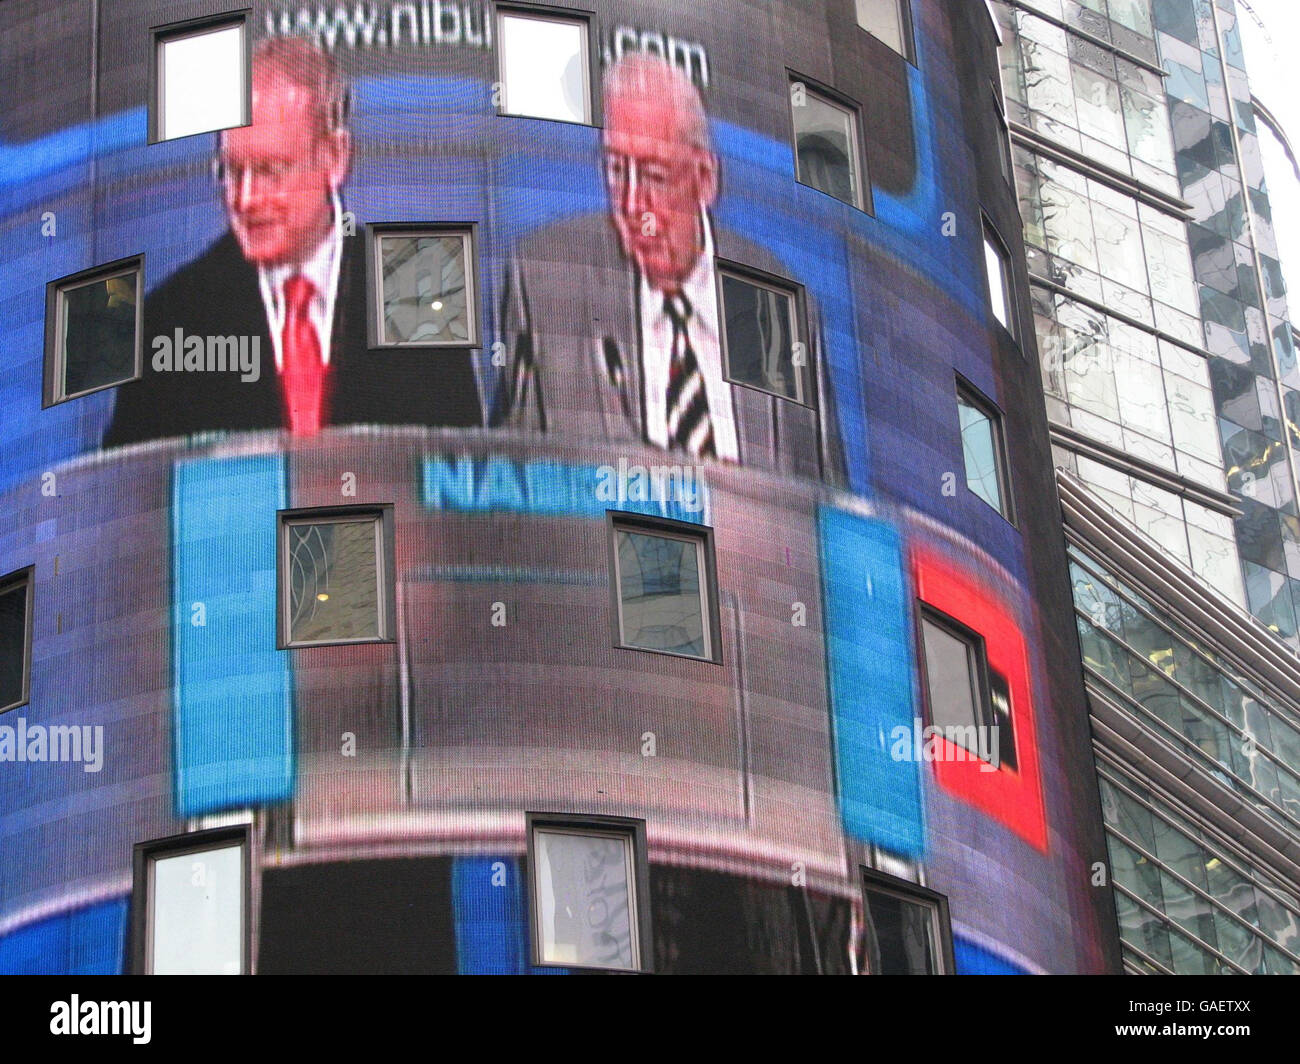 Während einer spektakulären Eröffnung der Nasdaq-Börse am New Yorker Times Square, die auf eine siebenstöckige Leinwand projiziert und live in den Vereinigten Staaten übertragen wurde, Nordirlands erster Minister Ian Paisley und der stellvertretende erste Minister Martin McGuinness wurden von führenden irischen Amerikanern begrüßt, nachdem sie sagten, dass Nordirland bereit sei, Geschäfte mit den Vereinigten Staaten zu machen. Stockfoto